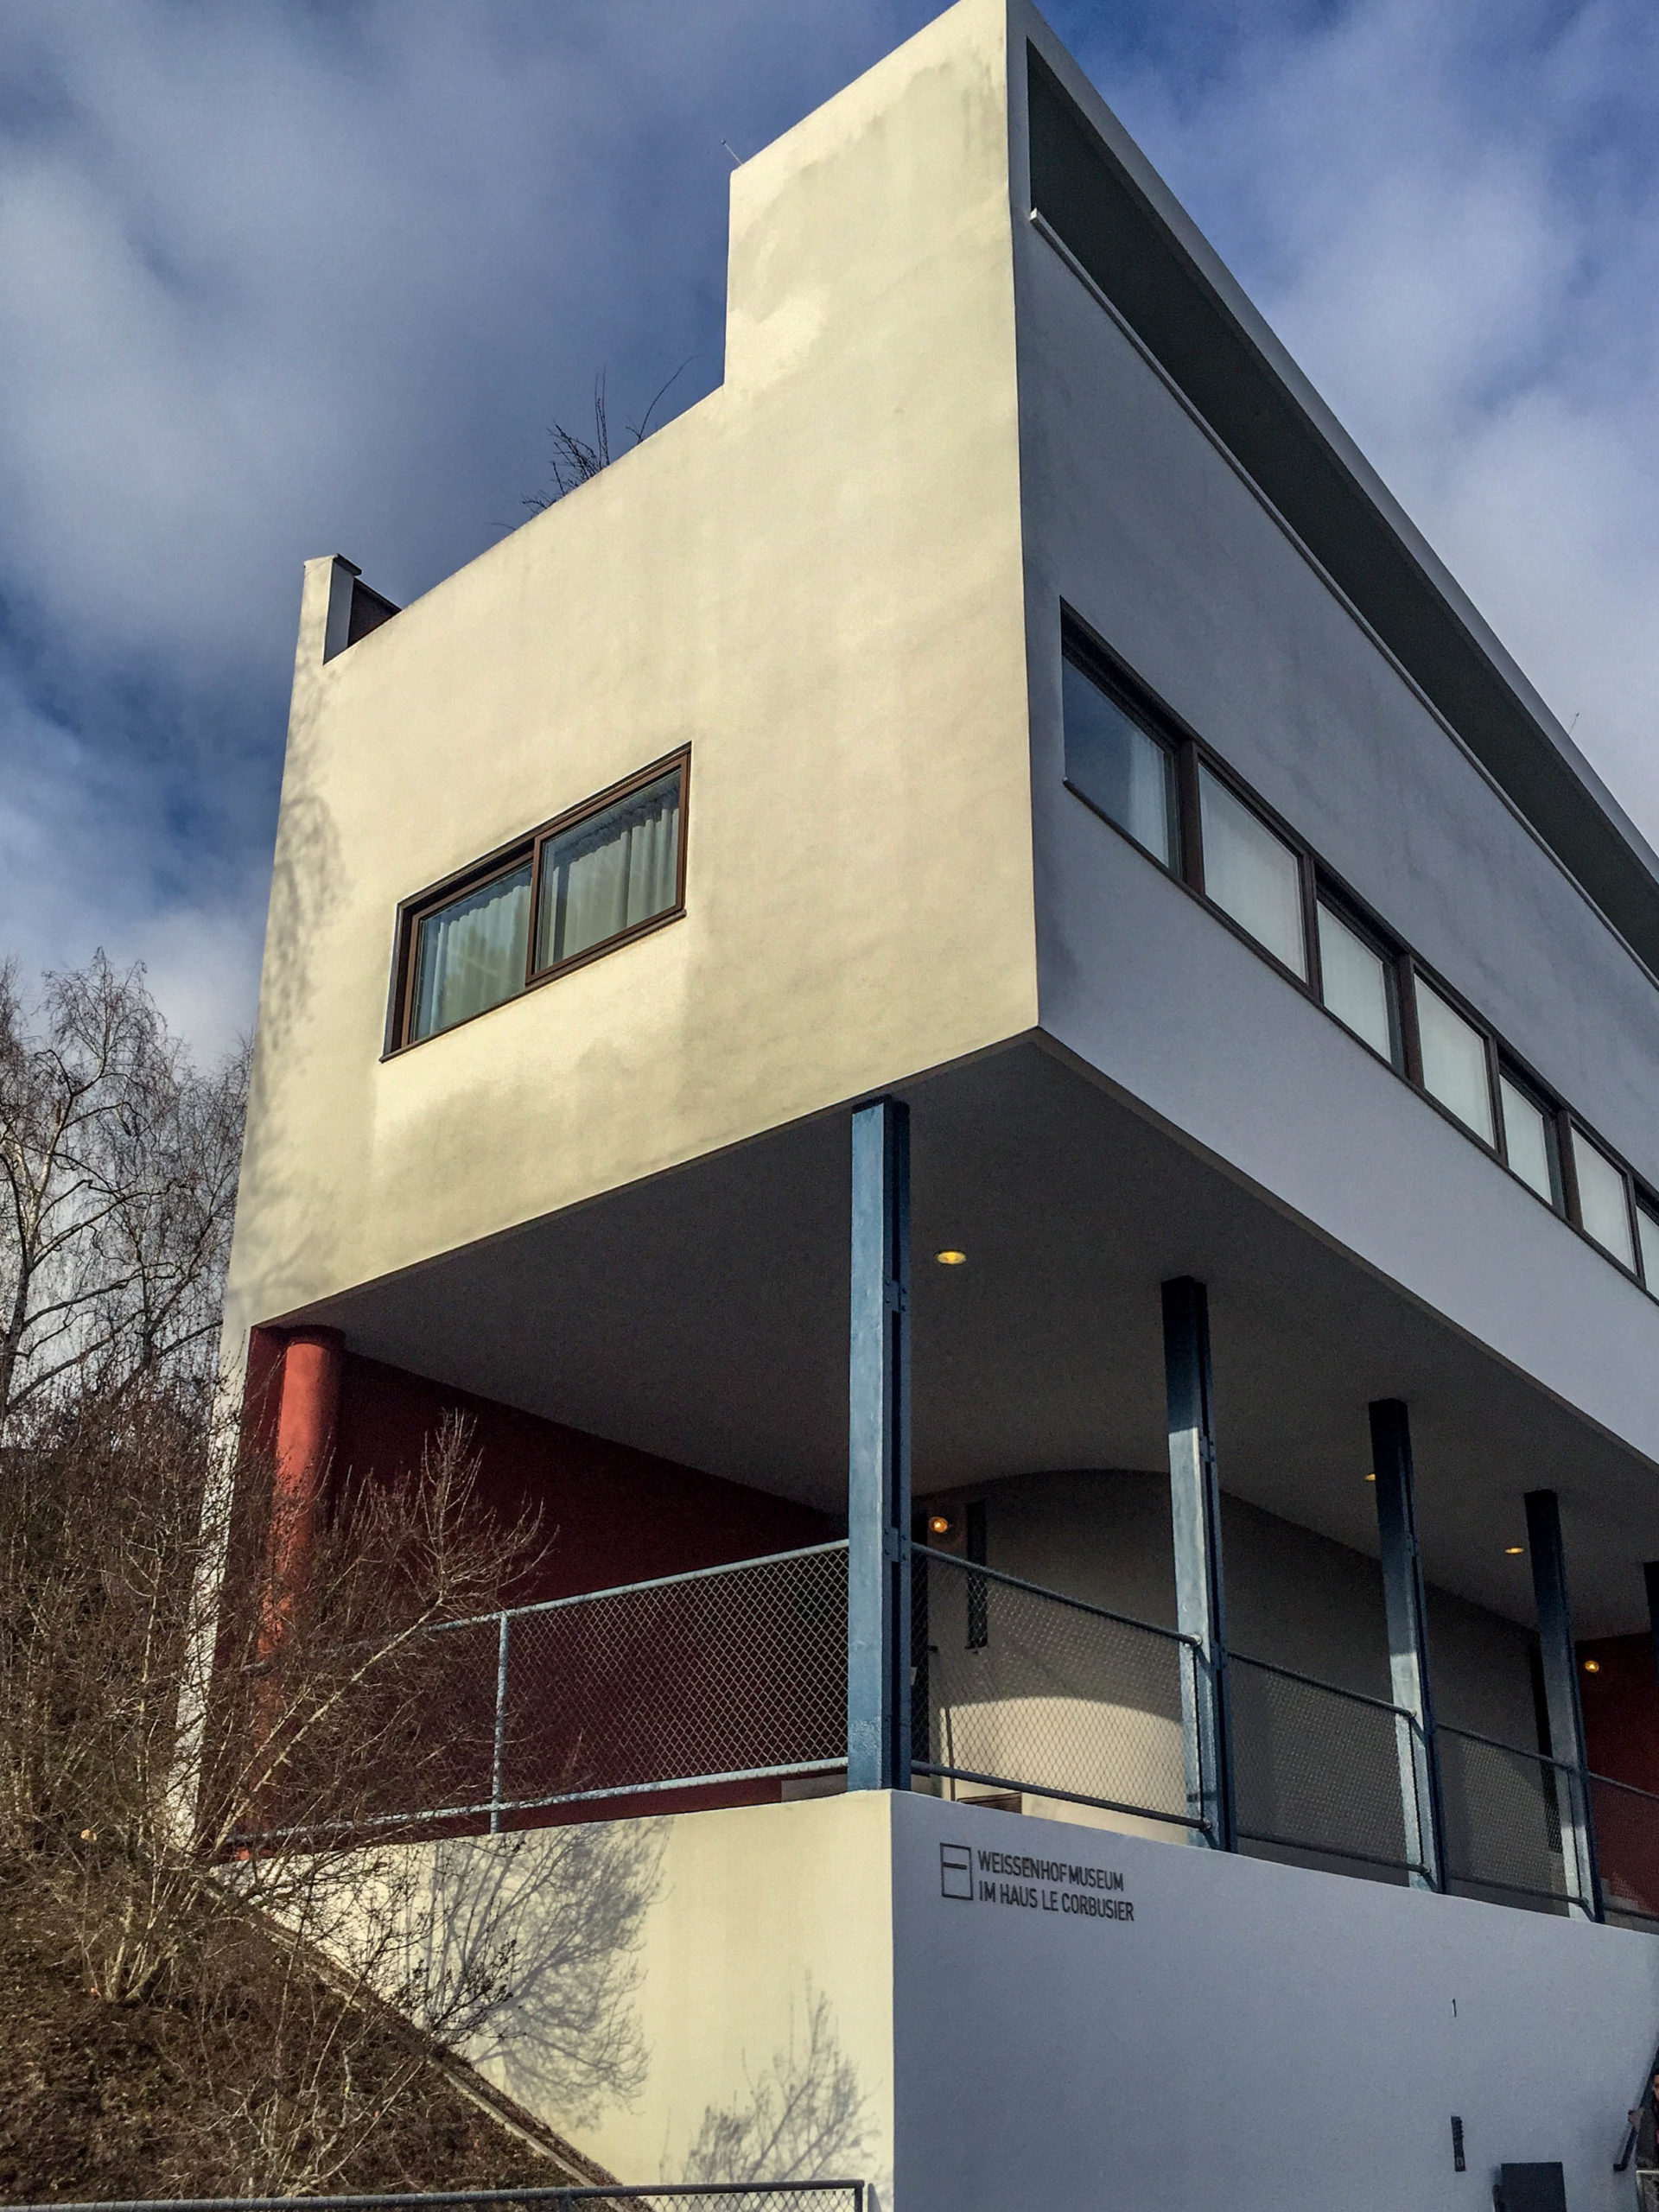 Semi-detached house, 1927. Architects: Le Corbusier, Pierre Jeanneret. Photo: Daniela Christmann